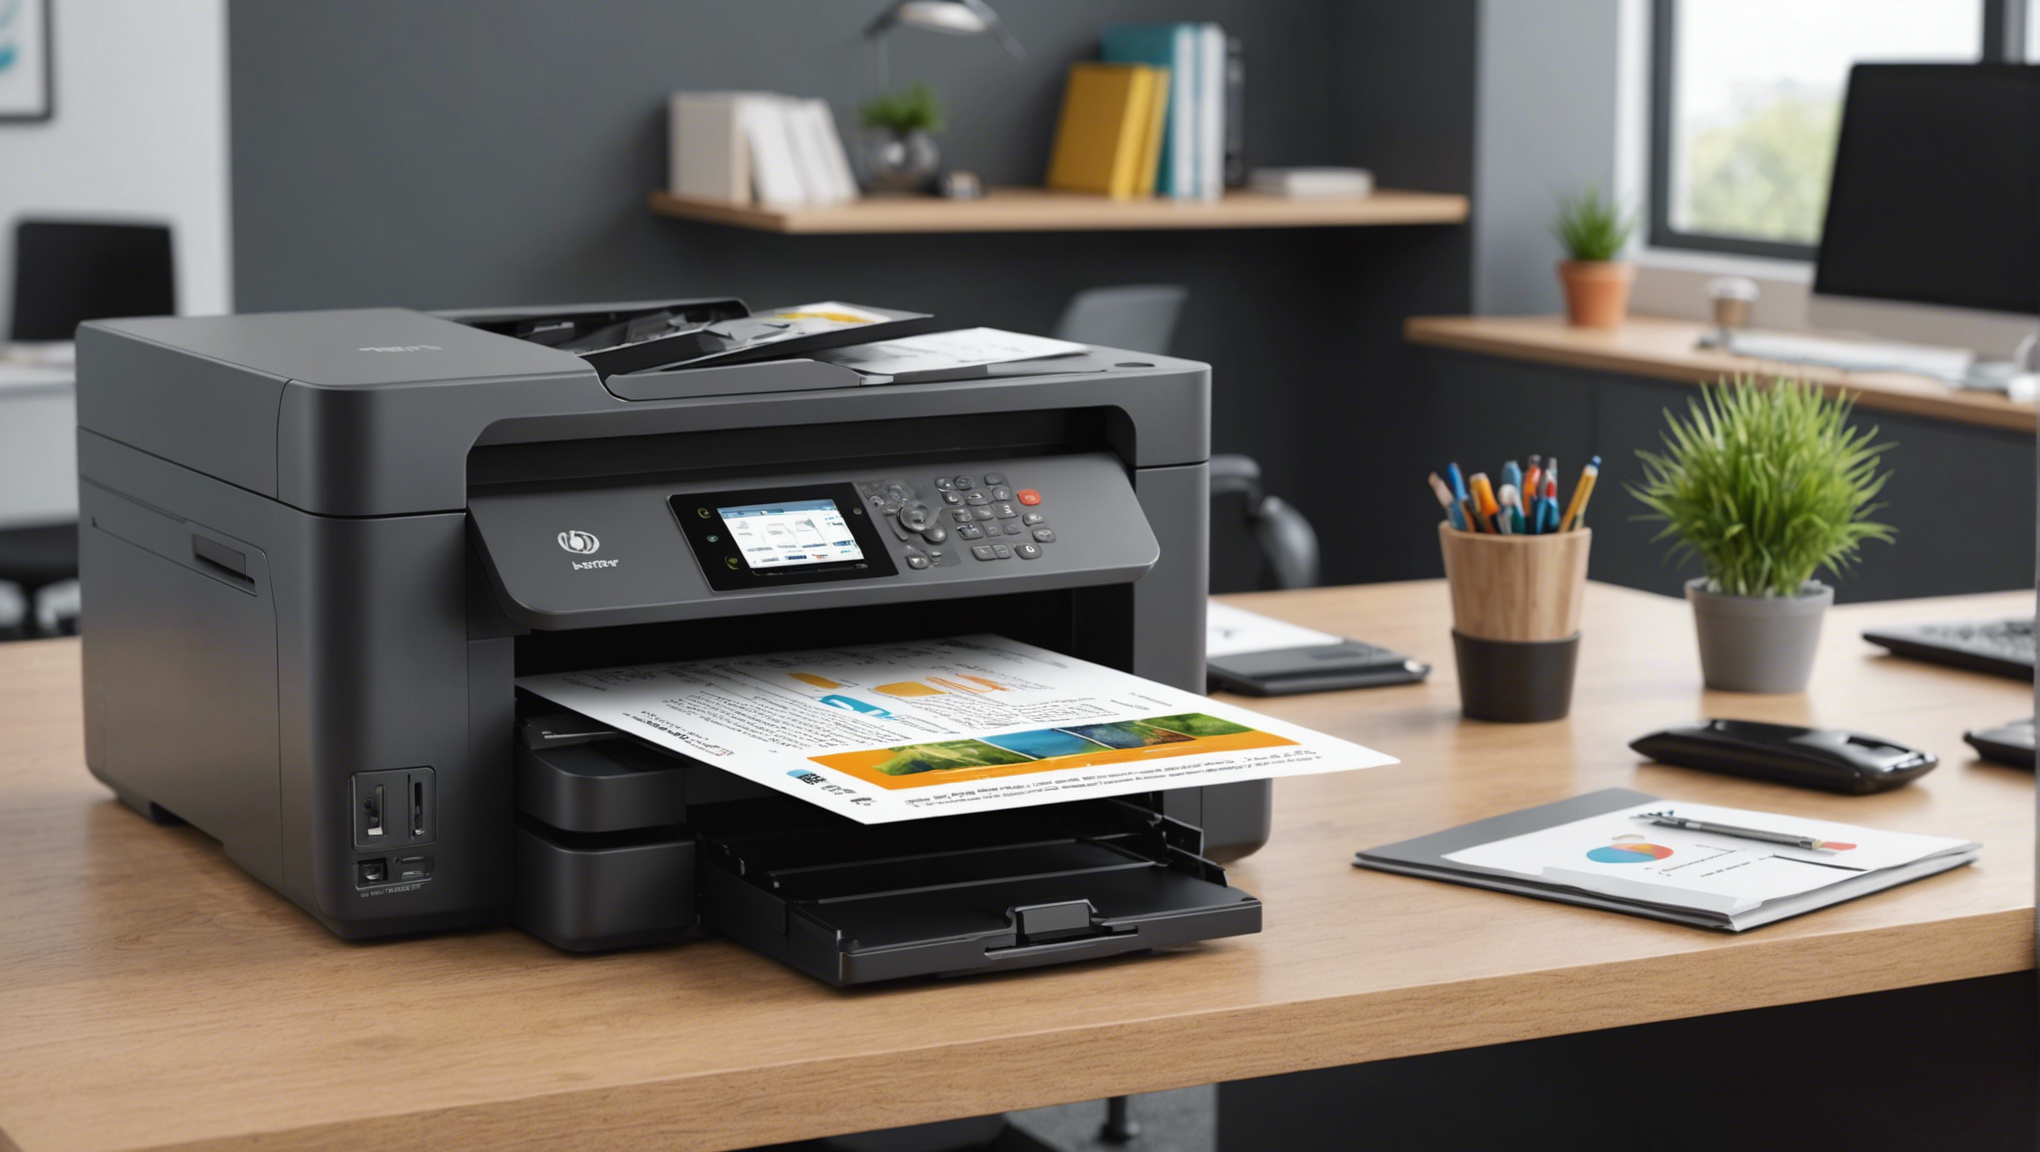 découvrez notre sélection d'imprimantes professionnelles tout-en-un à prix abordables pour imprimer, copier et numériser efficacement. optez pour une solution professionnelle à petit budget.